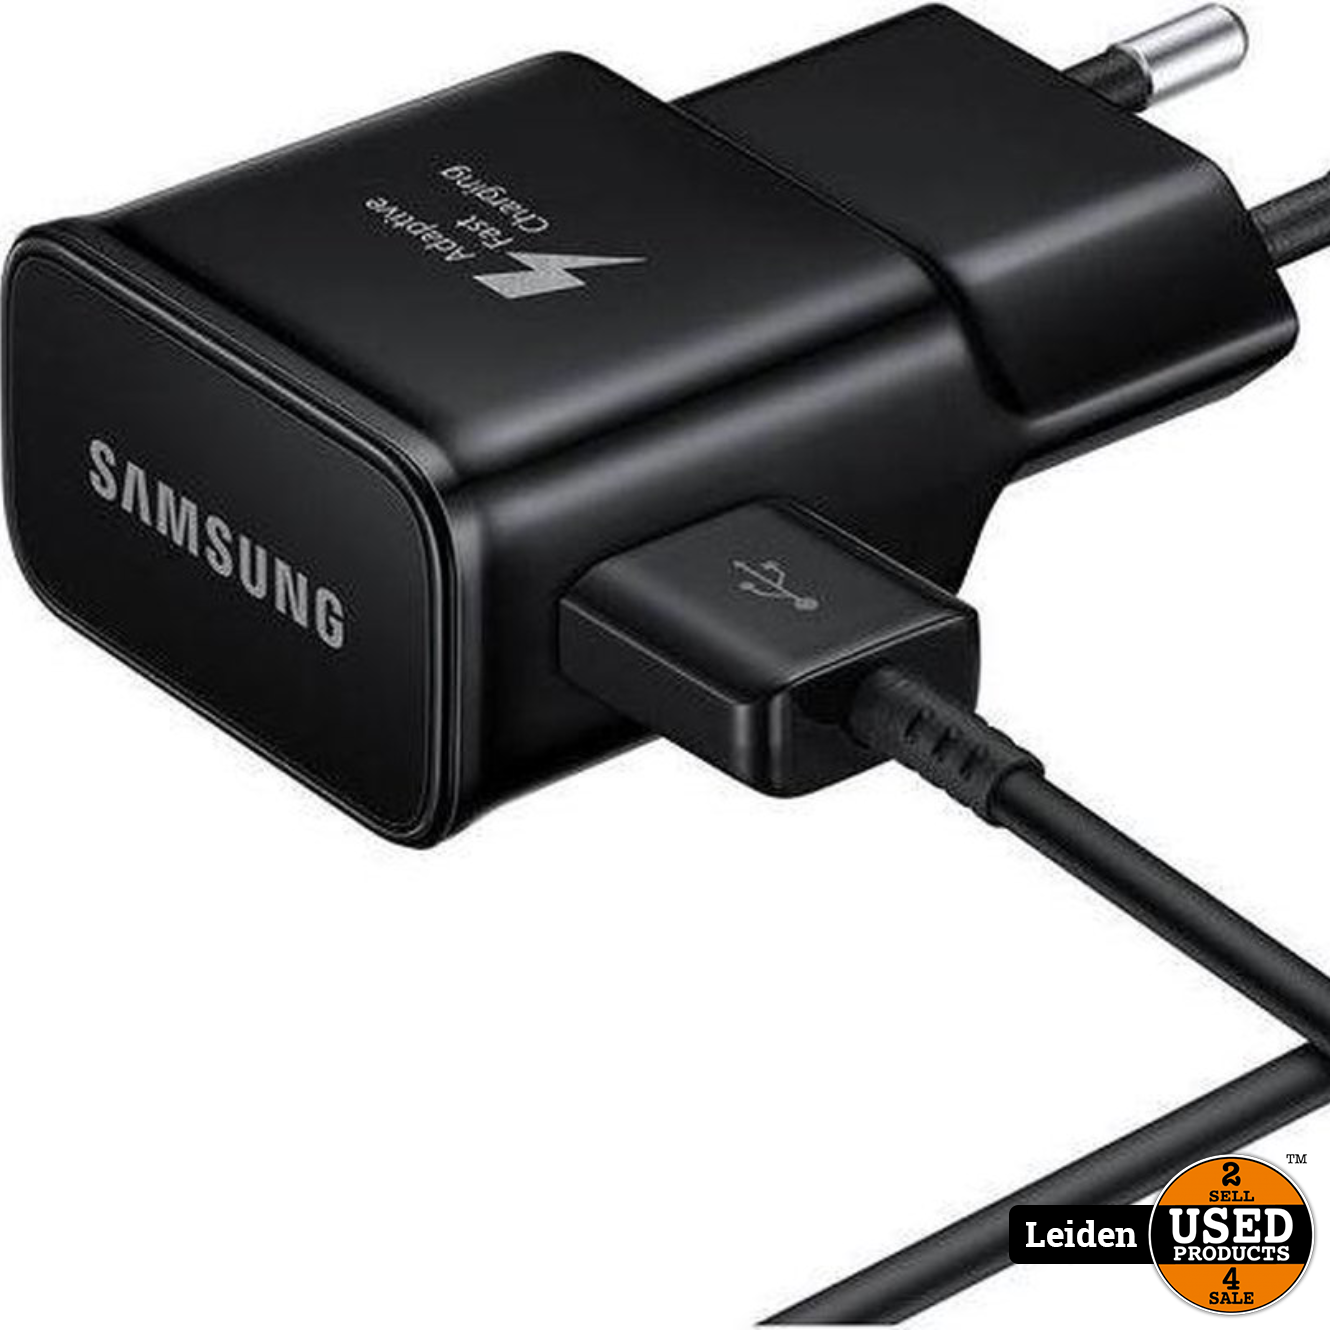 Verantwoordelijk persoon Ingenieurs Besnoeiing Samsung Travel Adapter 2A USB-C naar USB - Zwart - Used Products Leiden